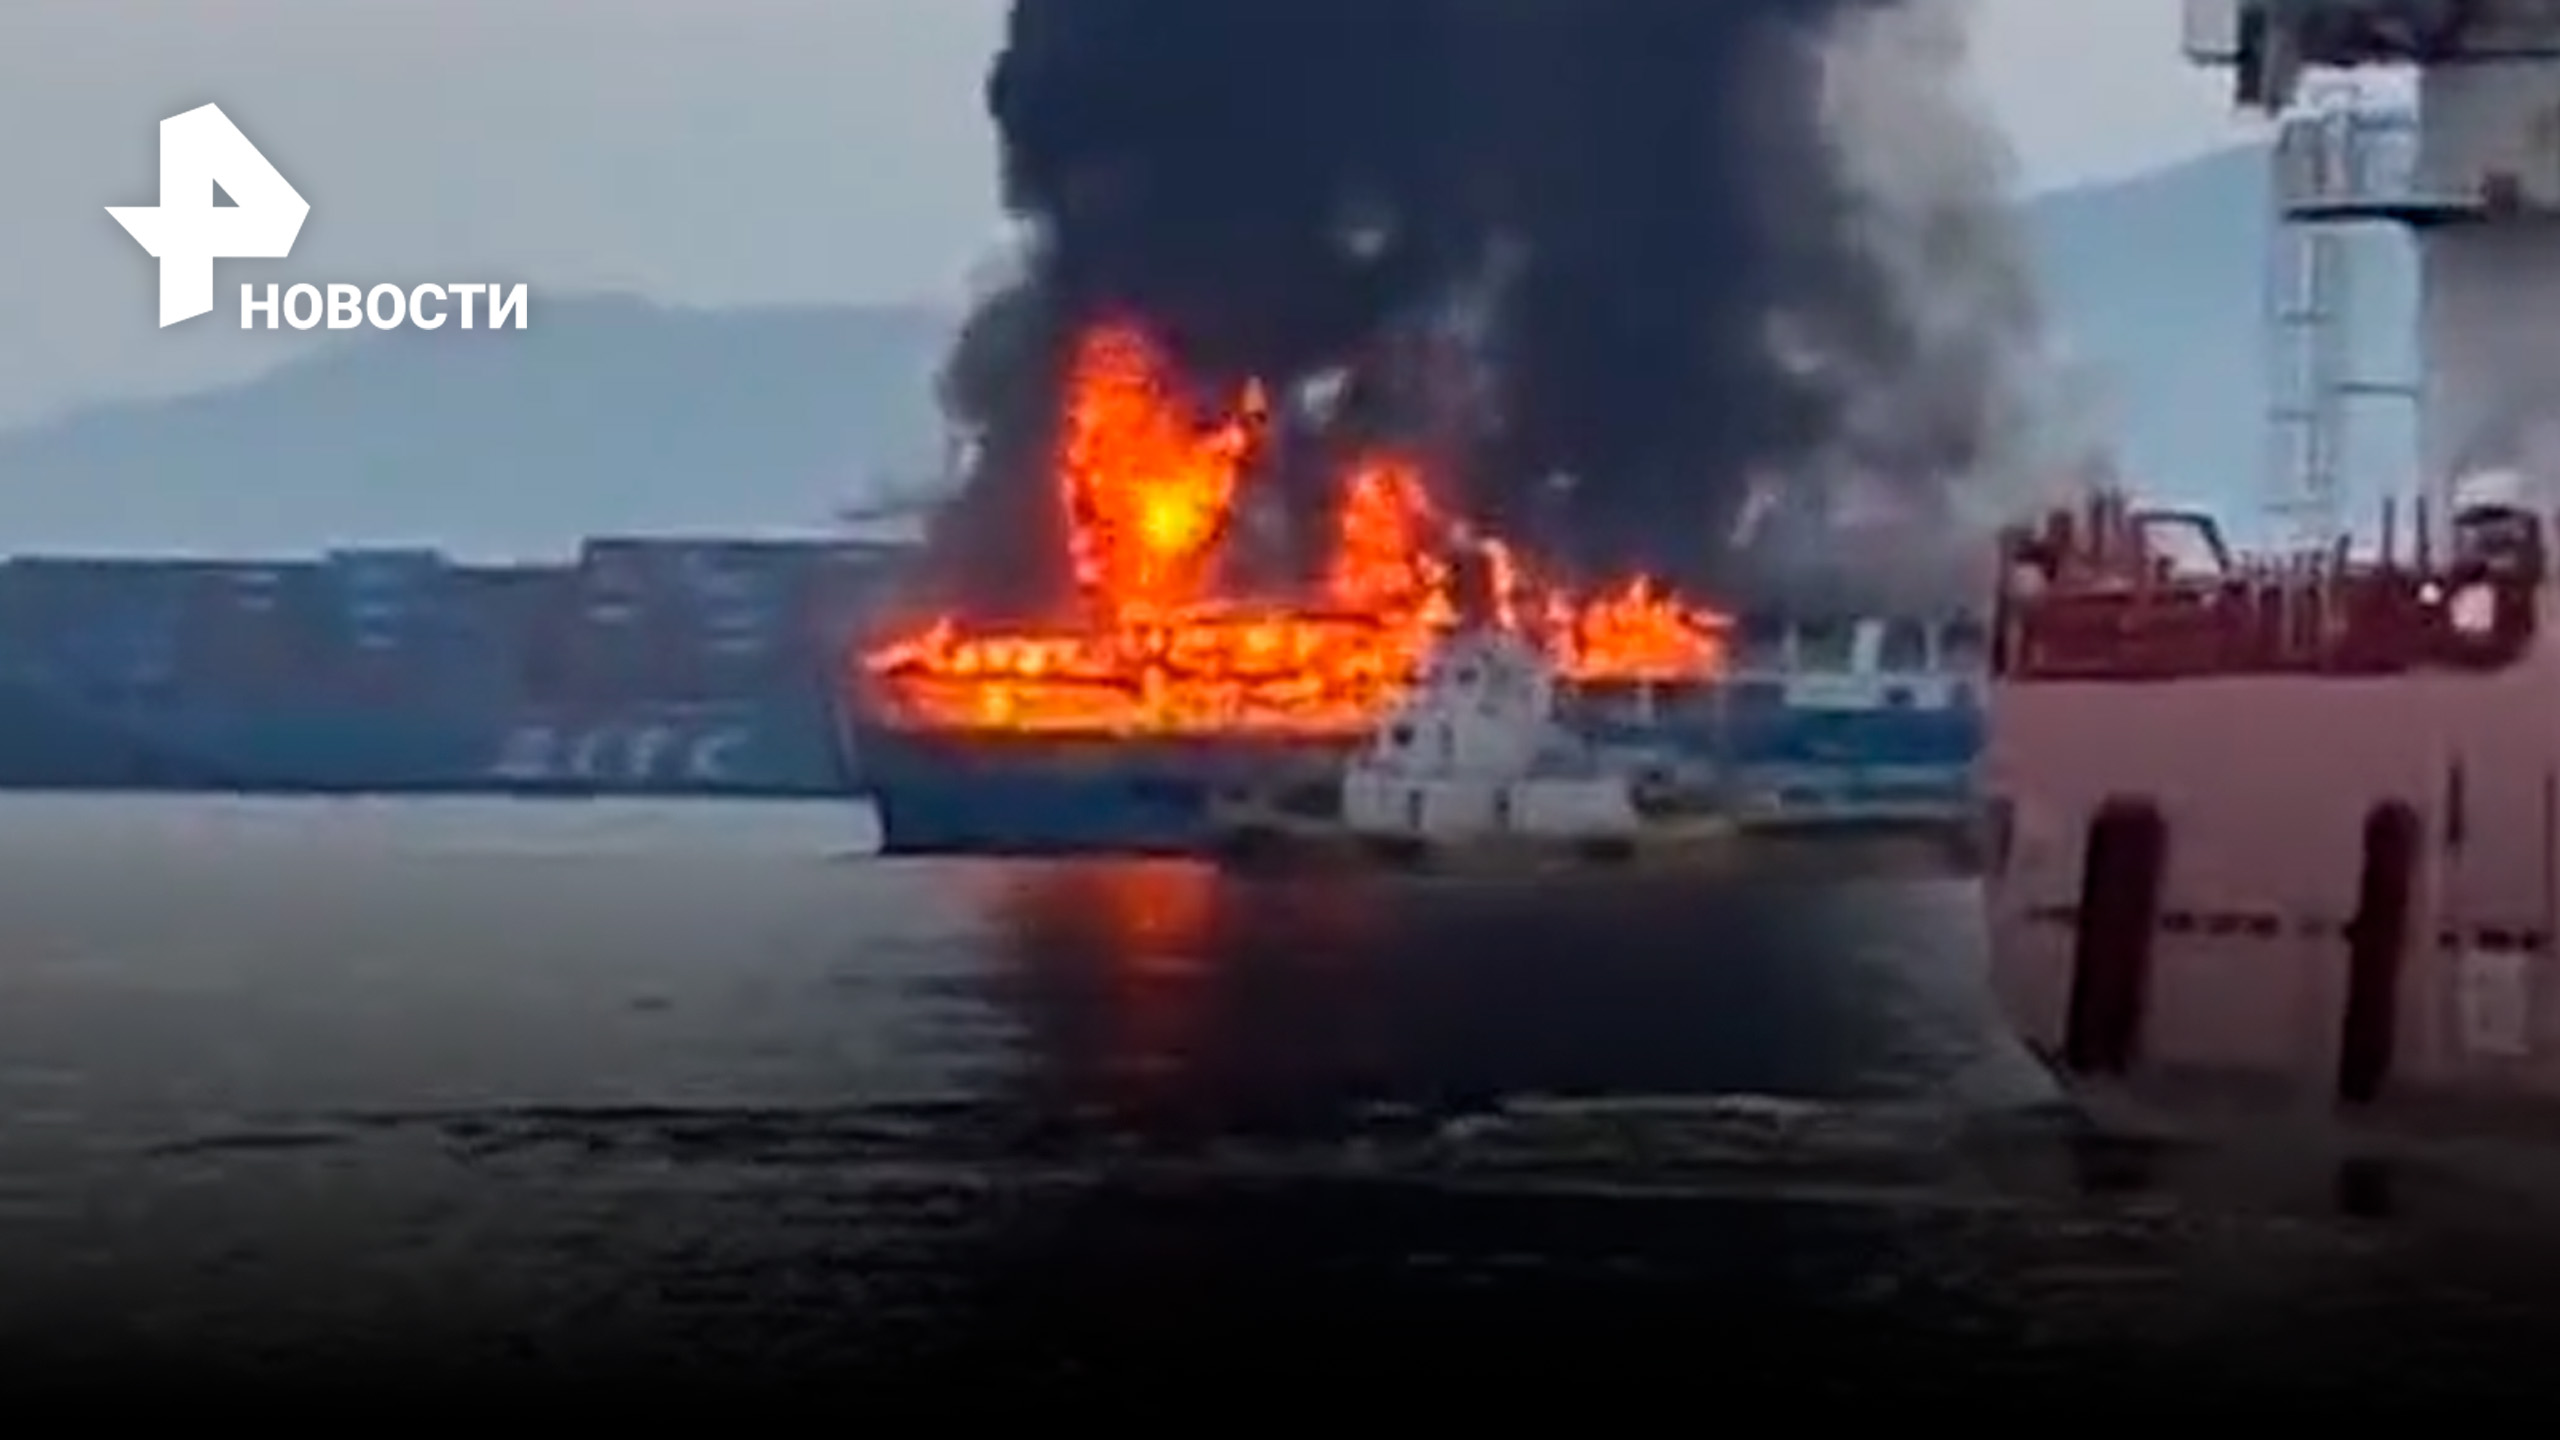 Рен вод. Катастрофа на Филиппинах паром столкнулся с танкером. Паром загорелся Филиппины. При пожаре на пассажирском судне на Филиппинах погибли 12 человек.